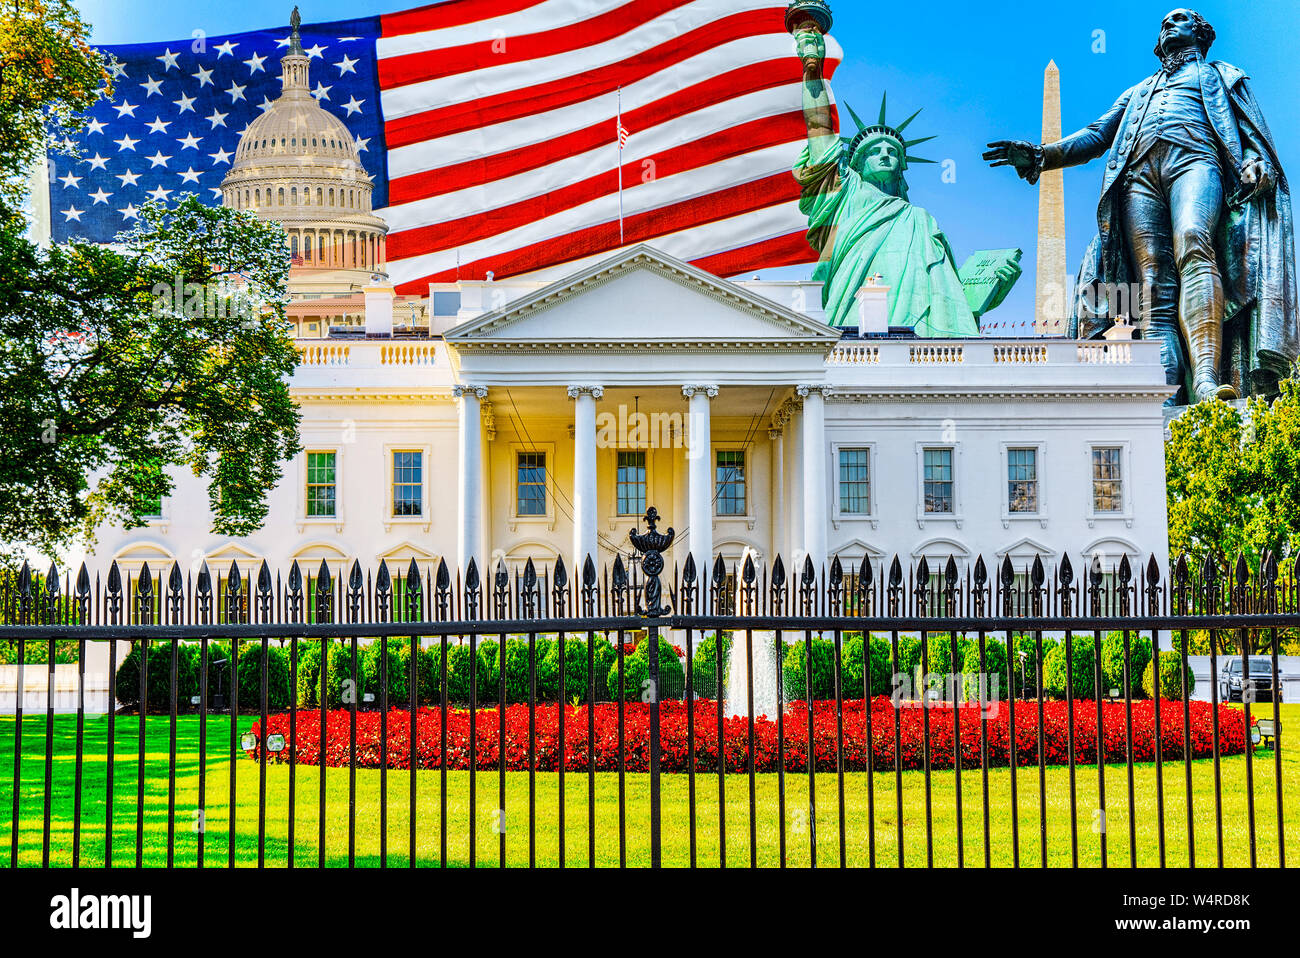 Das Weiße Haus ist auf der Nordseite und der Rasen vor der Шт Washington, DC. Washington ist die Hauptstadt der Vereinigten Staaten. Stockfoto